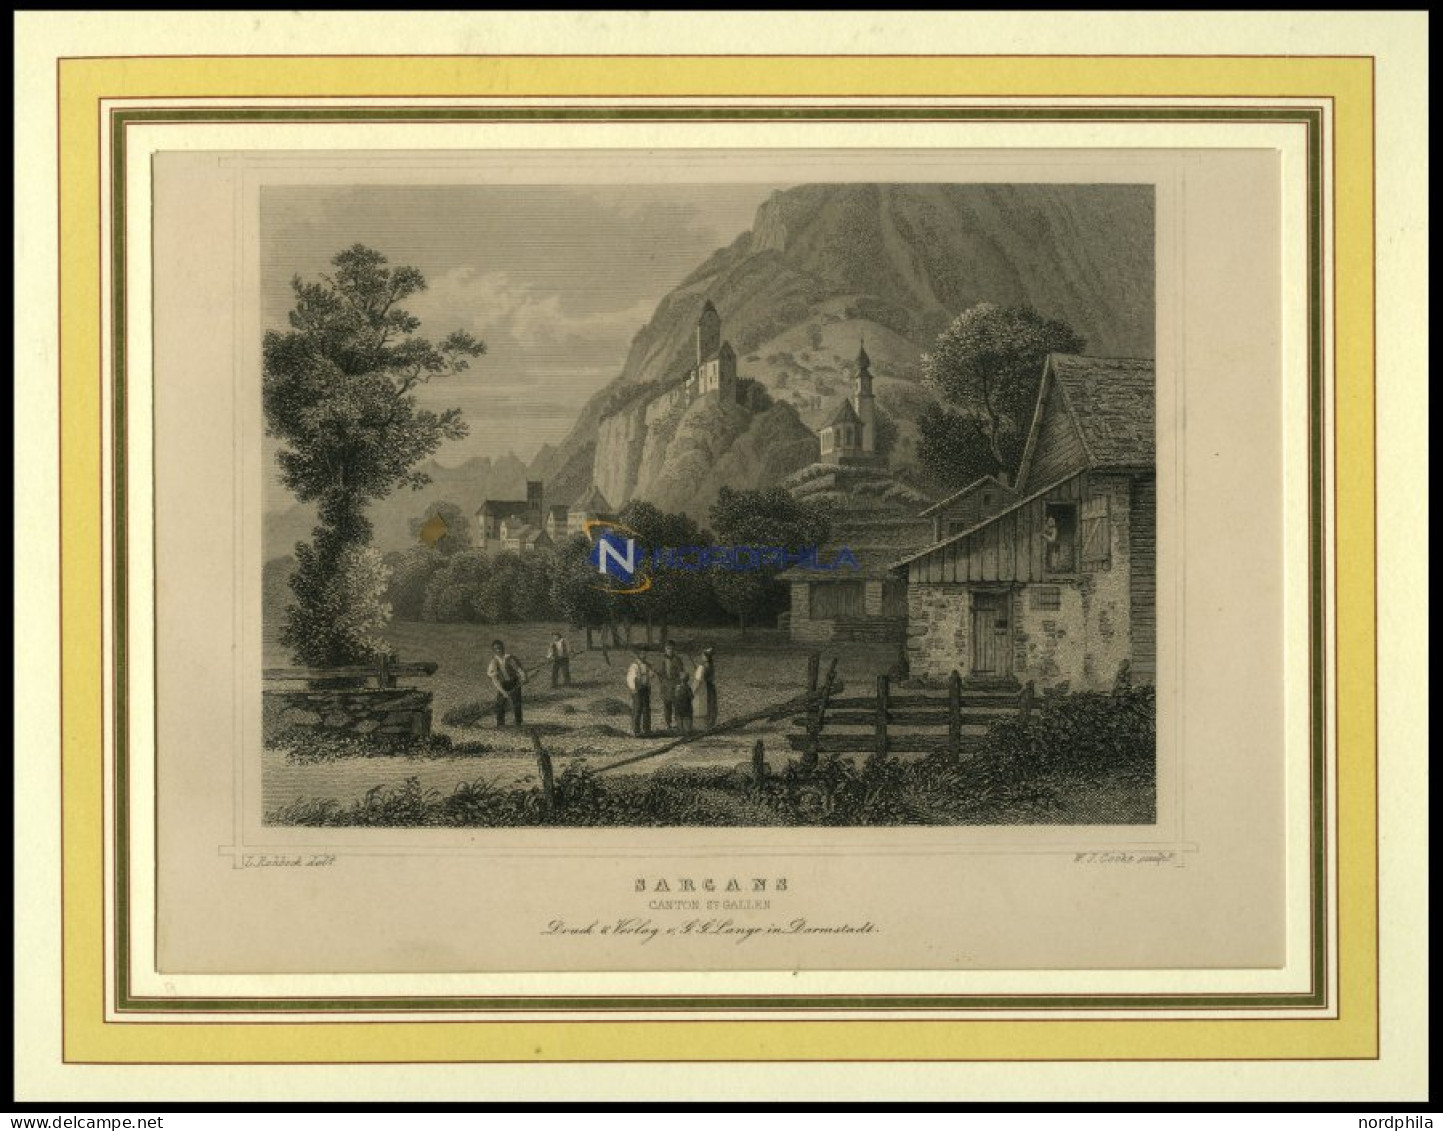 SARGANS, Teilansicht, Stahlstich Von Rohbock/Cooke Um 1840 - Lithographien